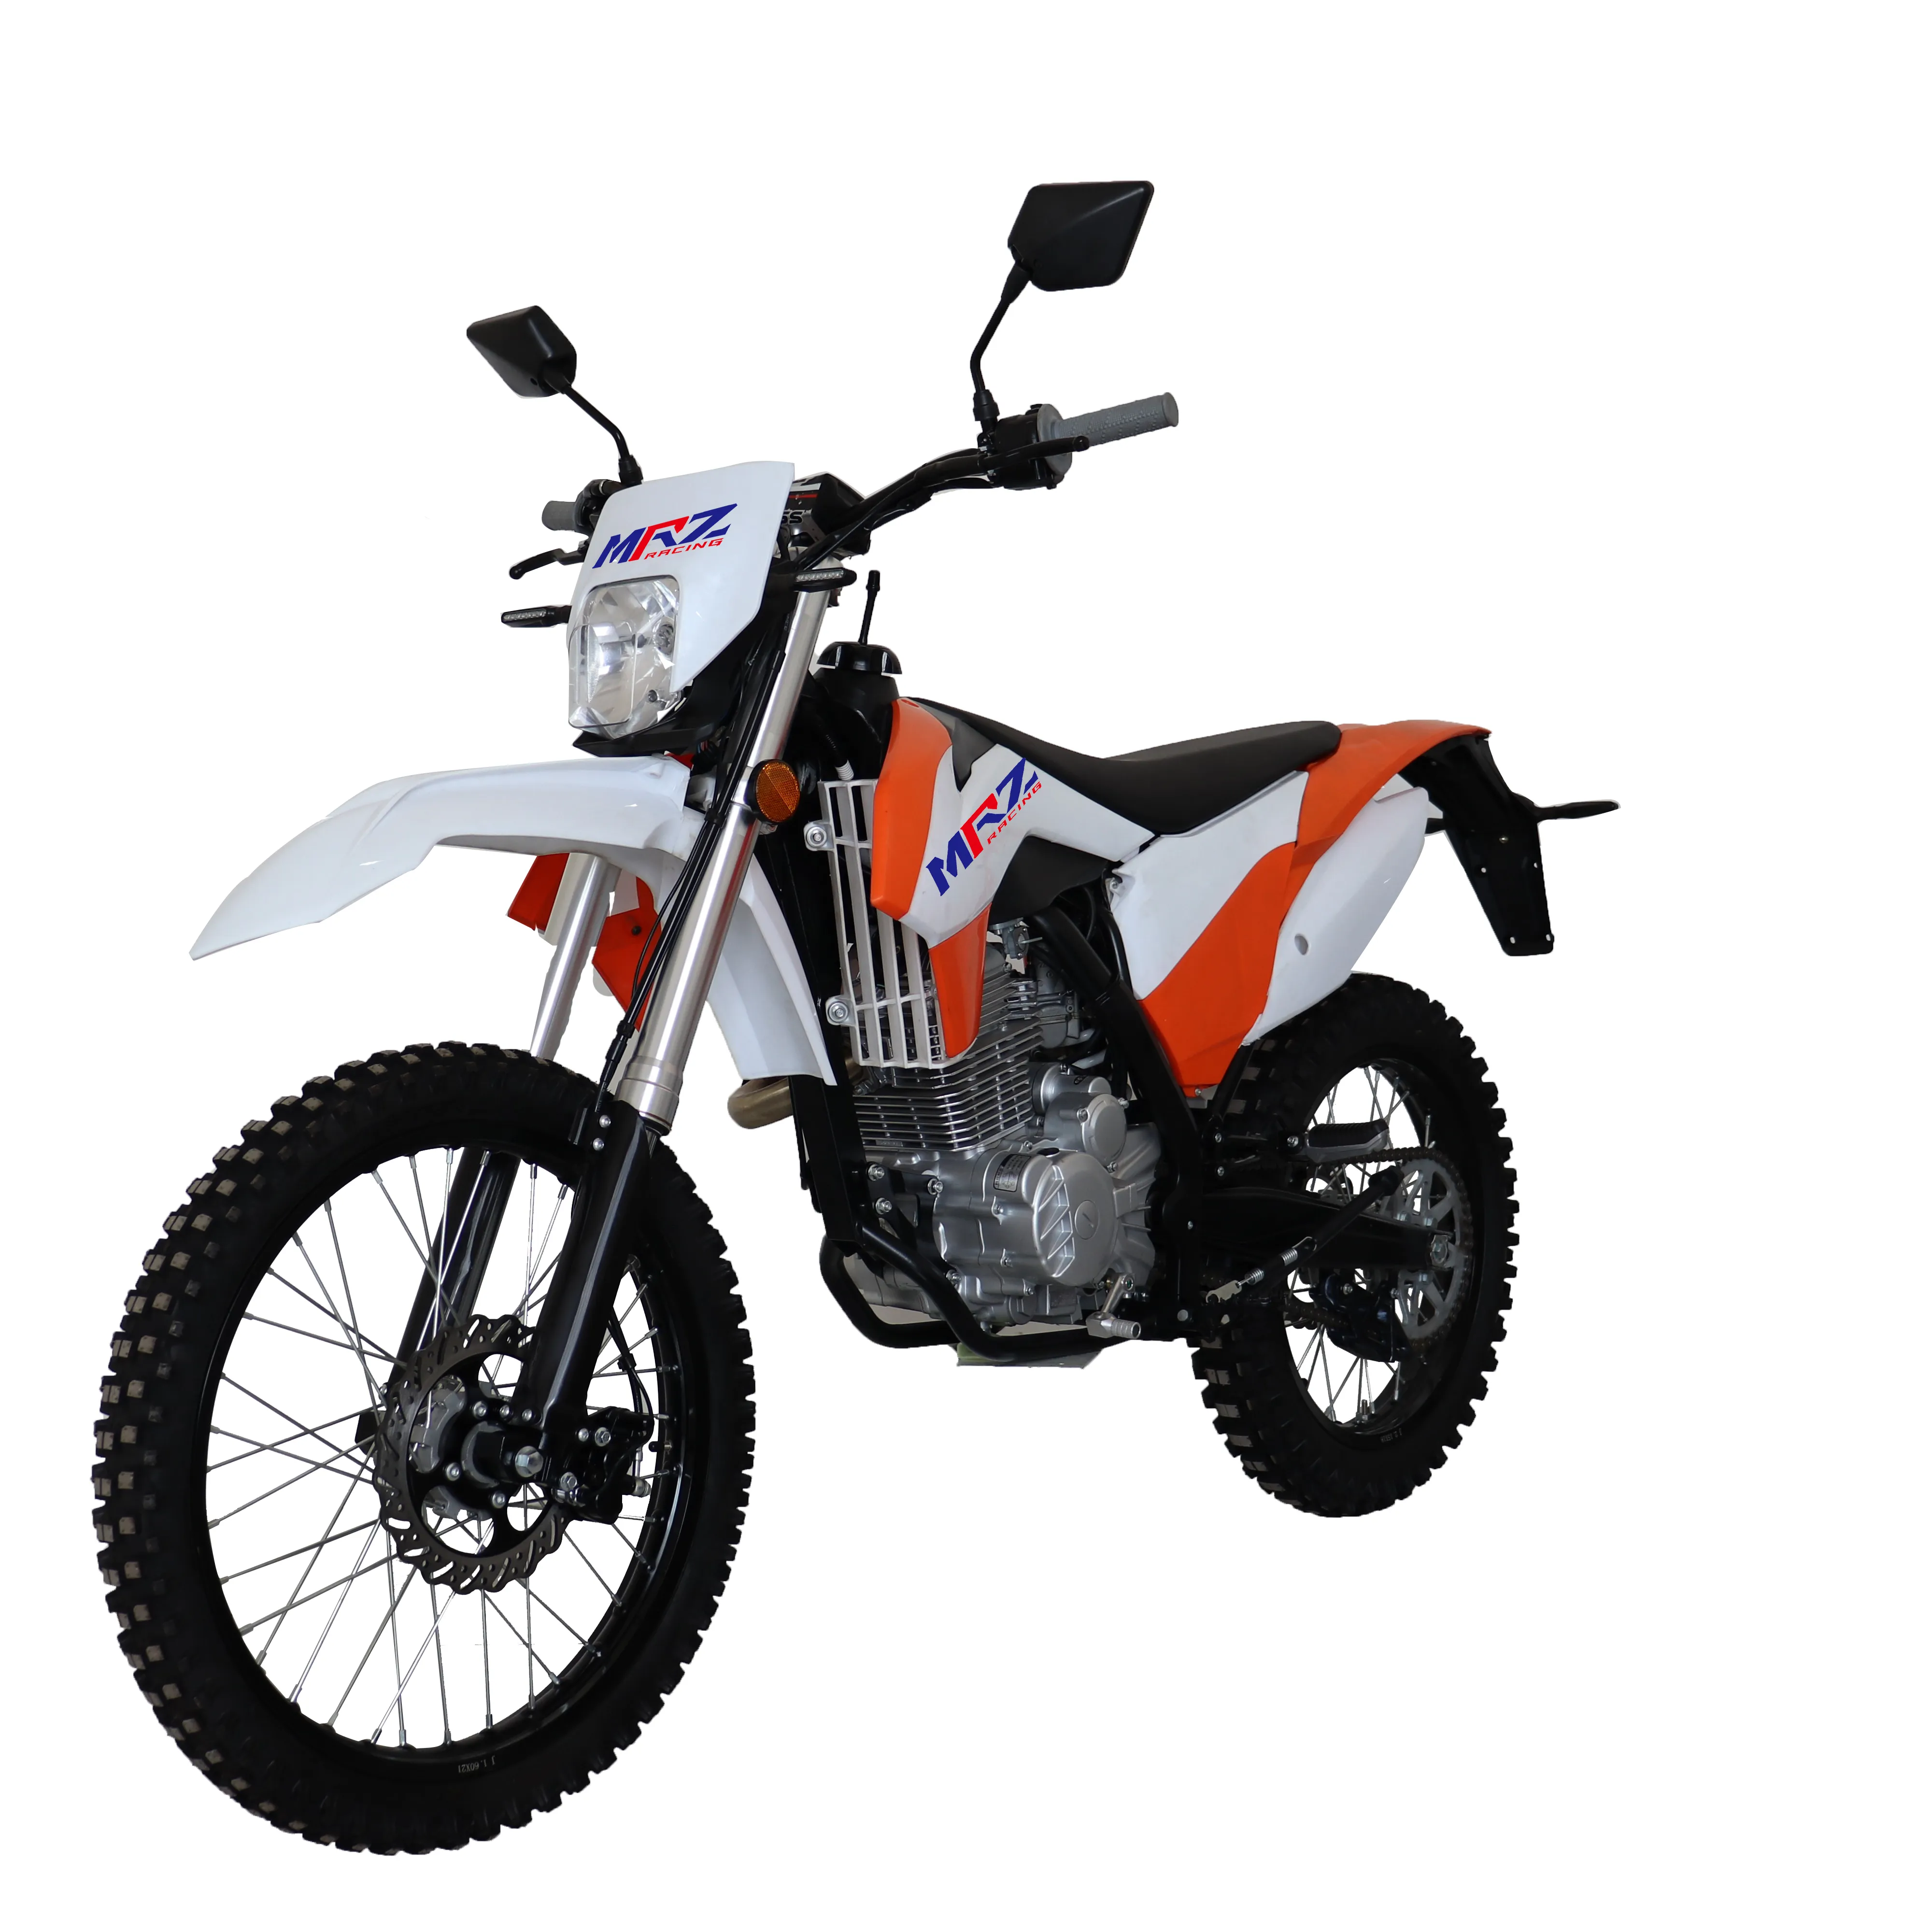 Nouveau automatique gaz moto cross dirtbike moteur dirt bike KTM 250cc essence motocross offroad moto avec zongshen moteur